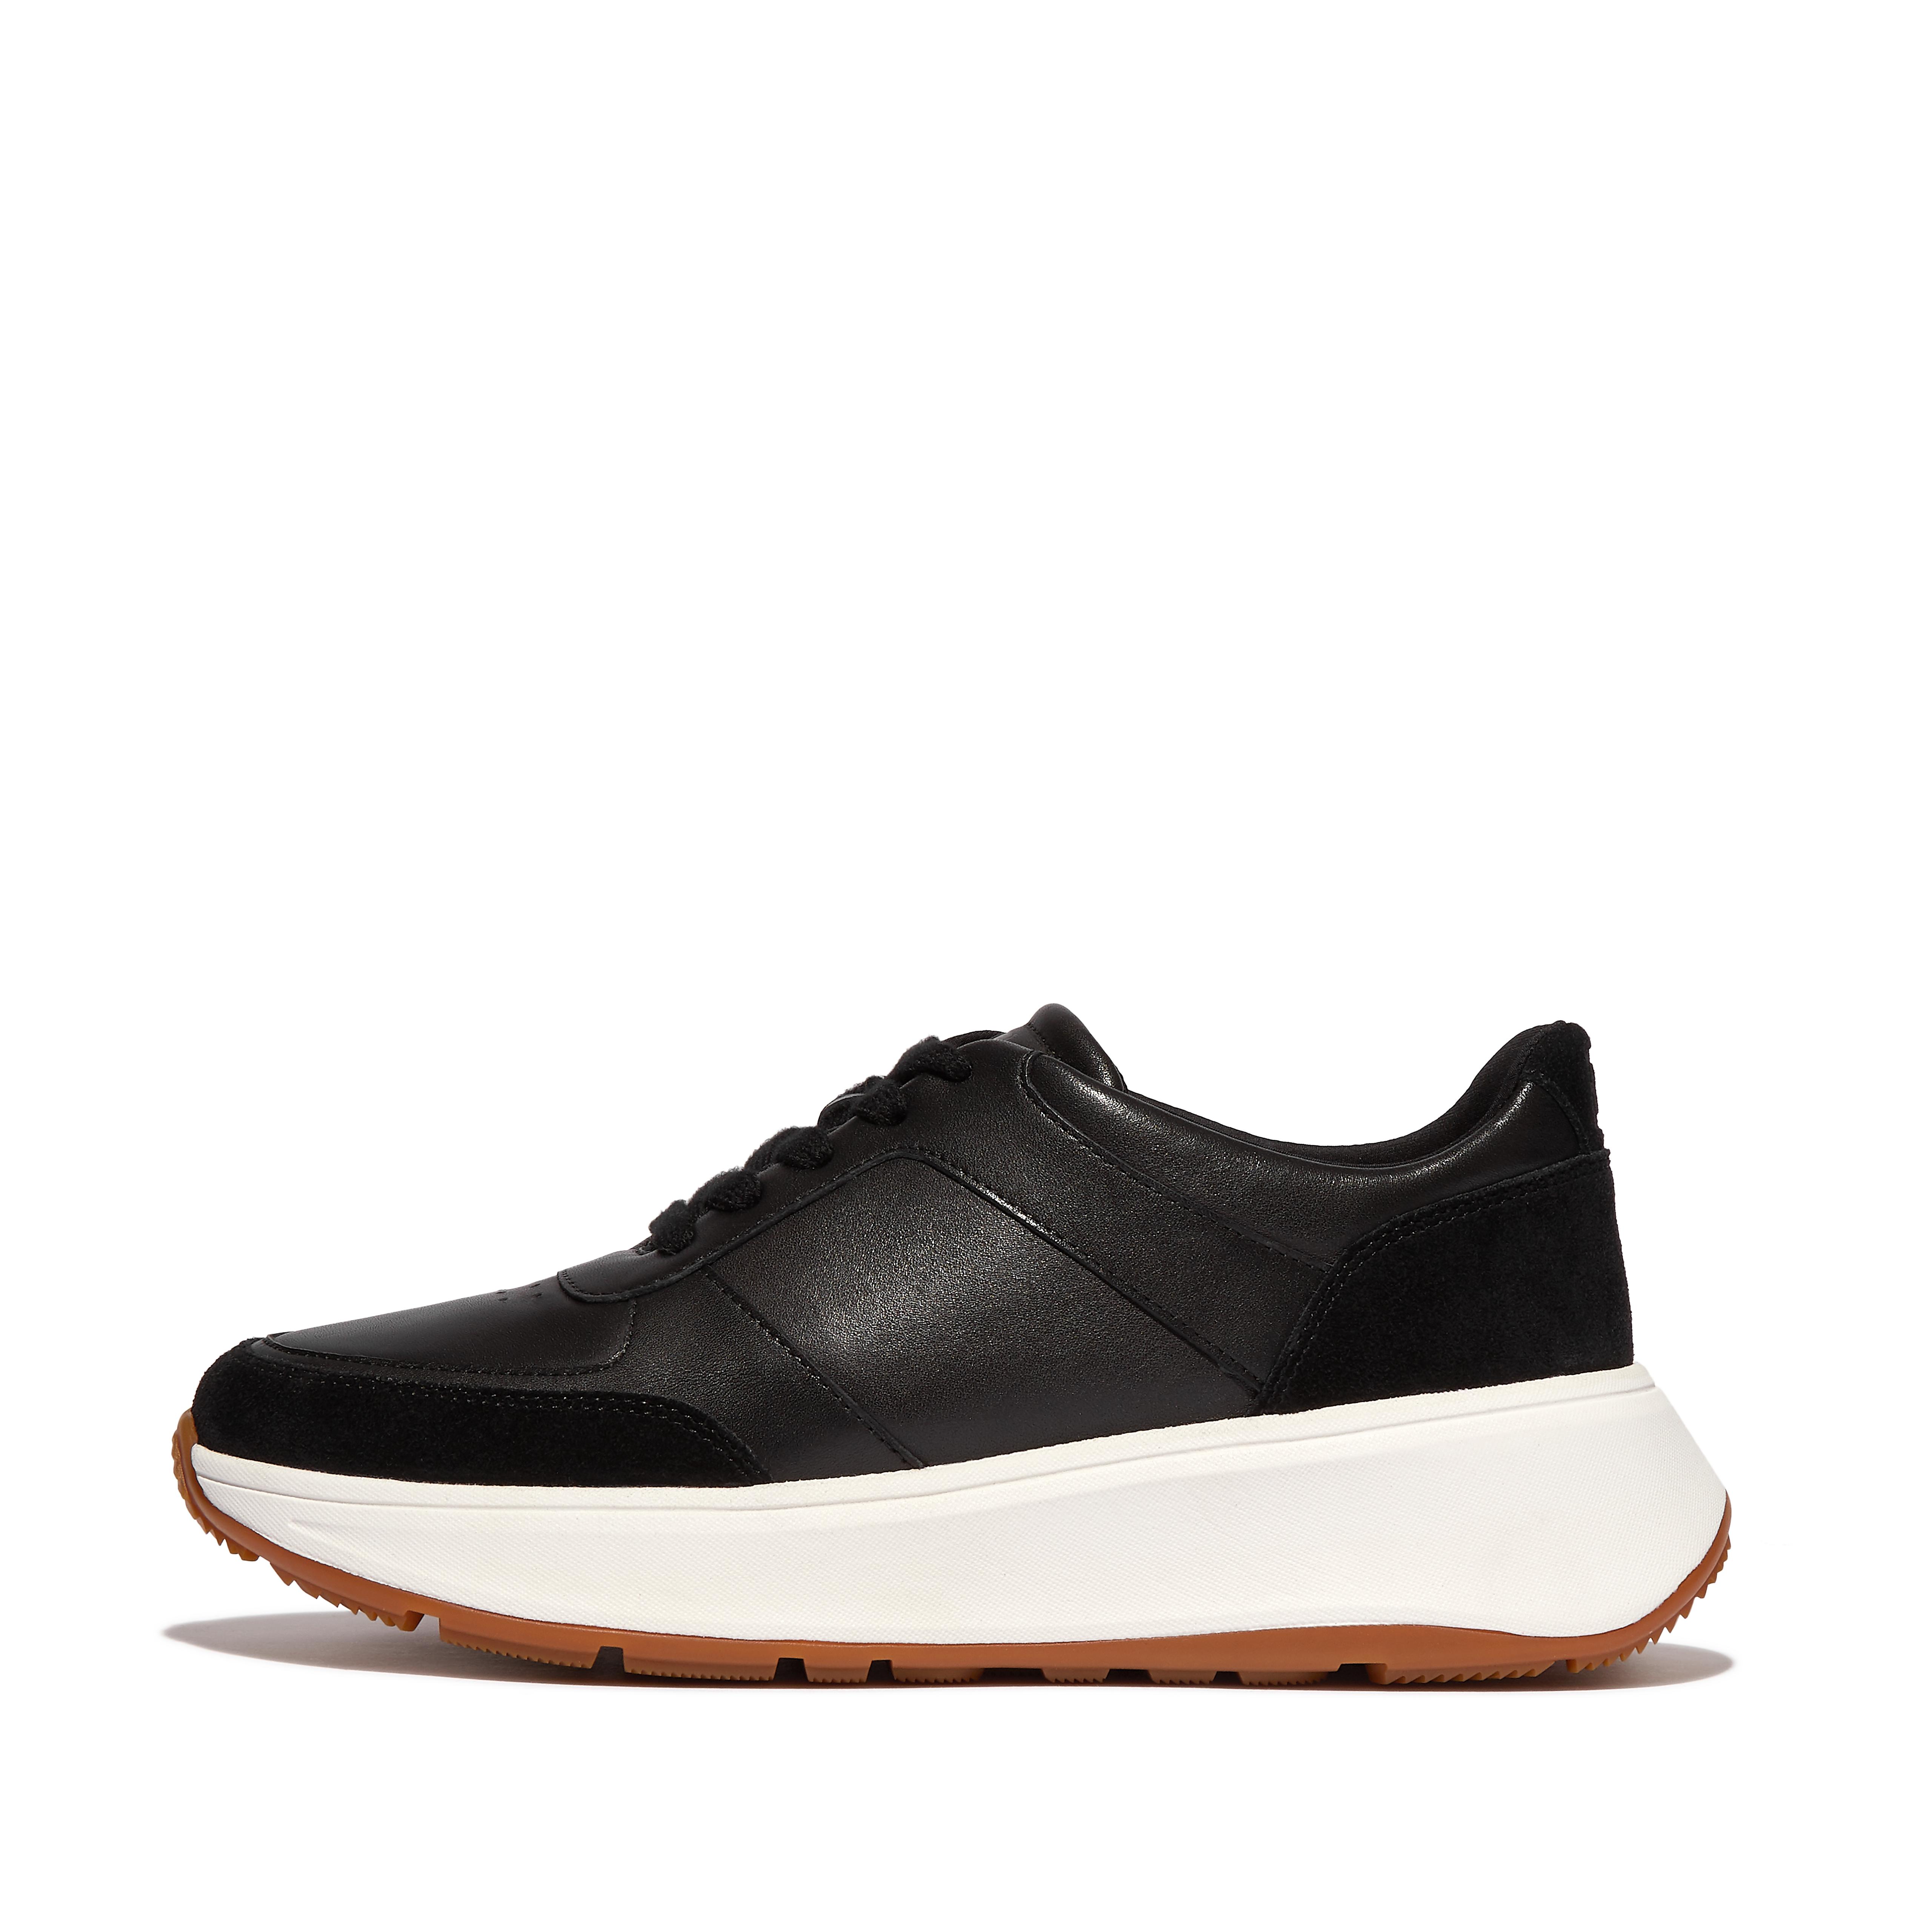 핏플랍 스니커즈 Fitflop Leather/Suede Flatform Sneakers,Black